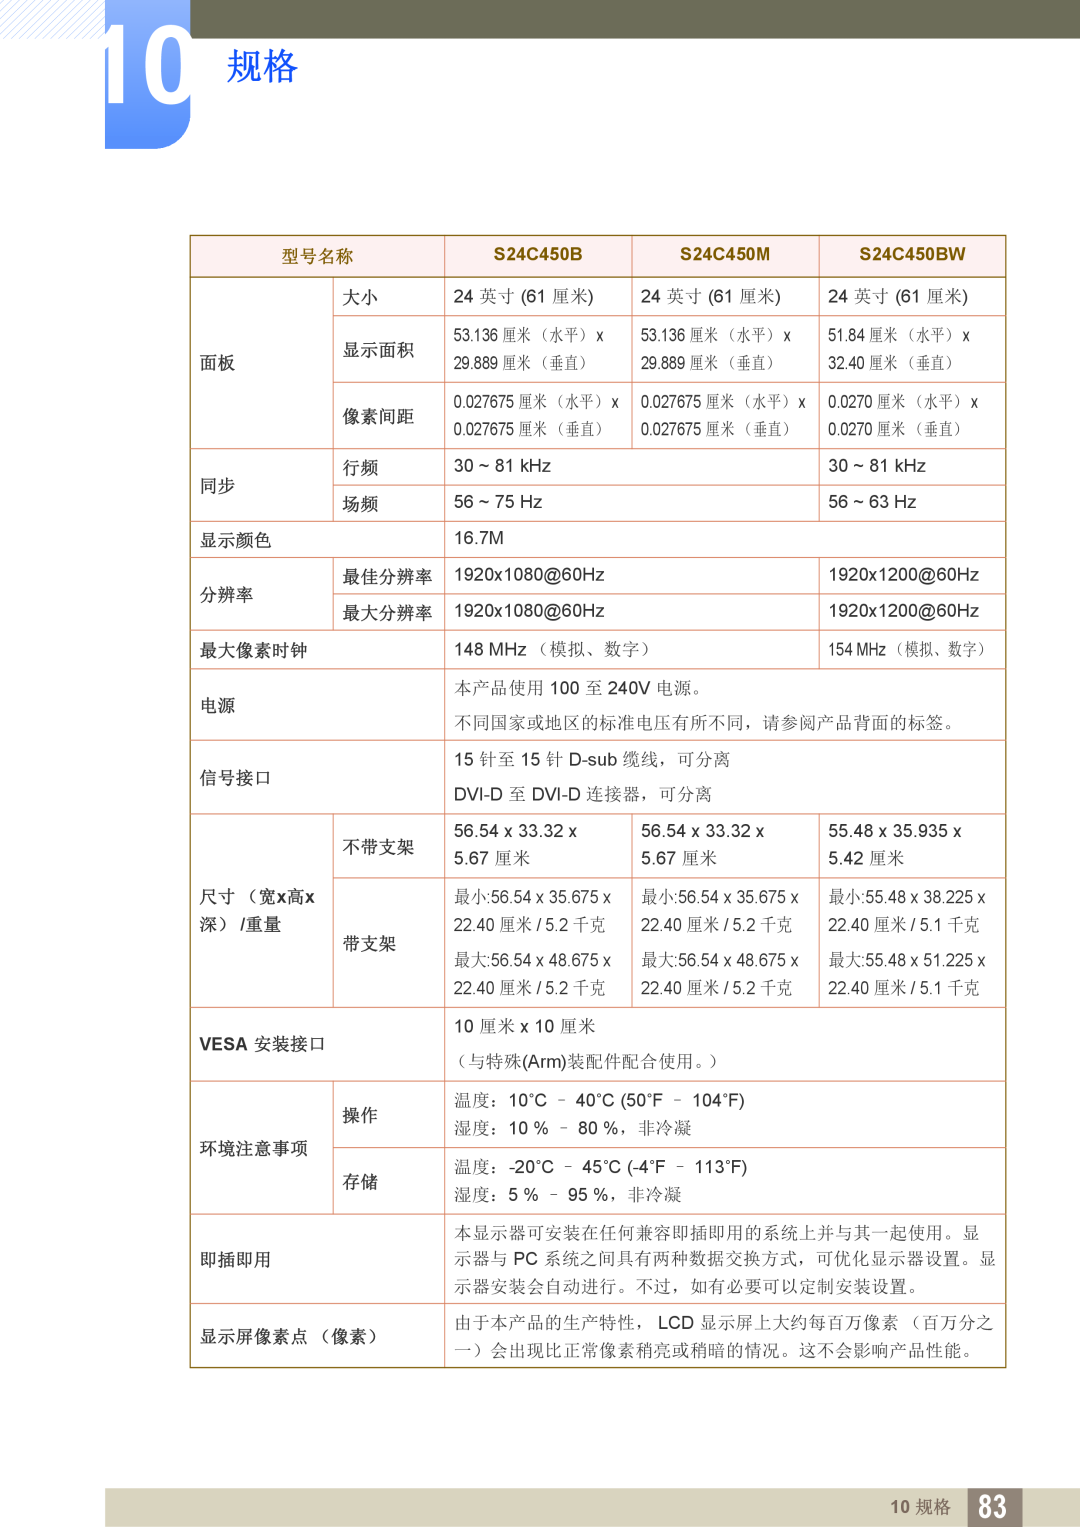 Samsung LS22C45KBS/EN manual S24C450M, S24C450BW, 10 规格, 型号名称, 本产品使用 100 至 240V 电源。, 不同国家或地区的标准电压有所不同，请参阅产品背面的标签。 